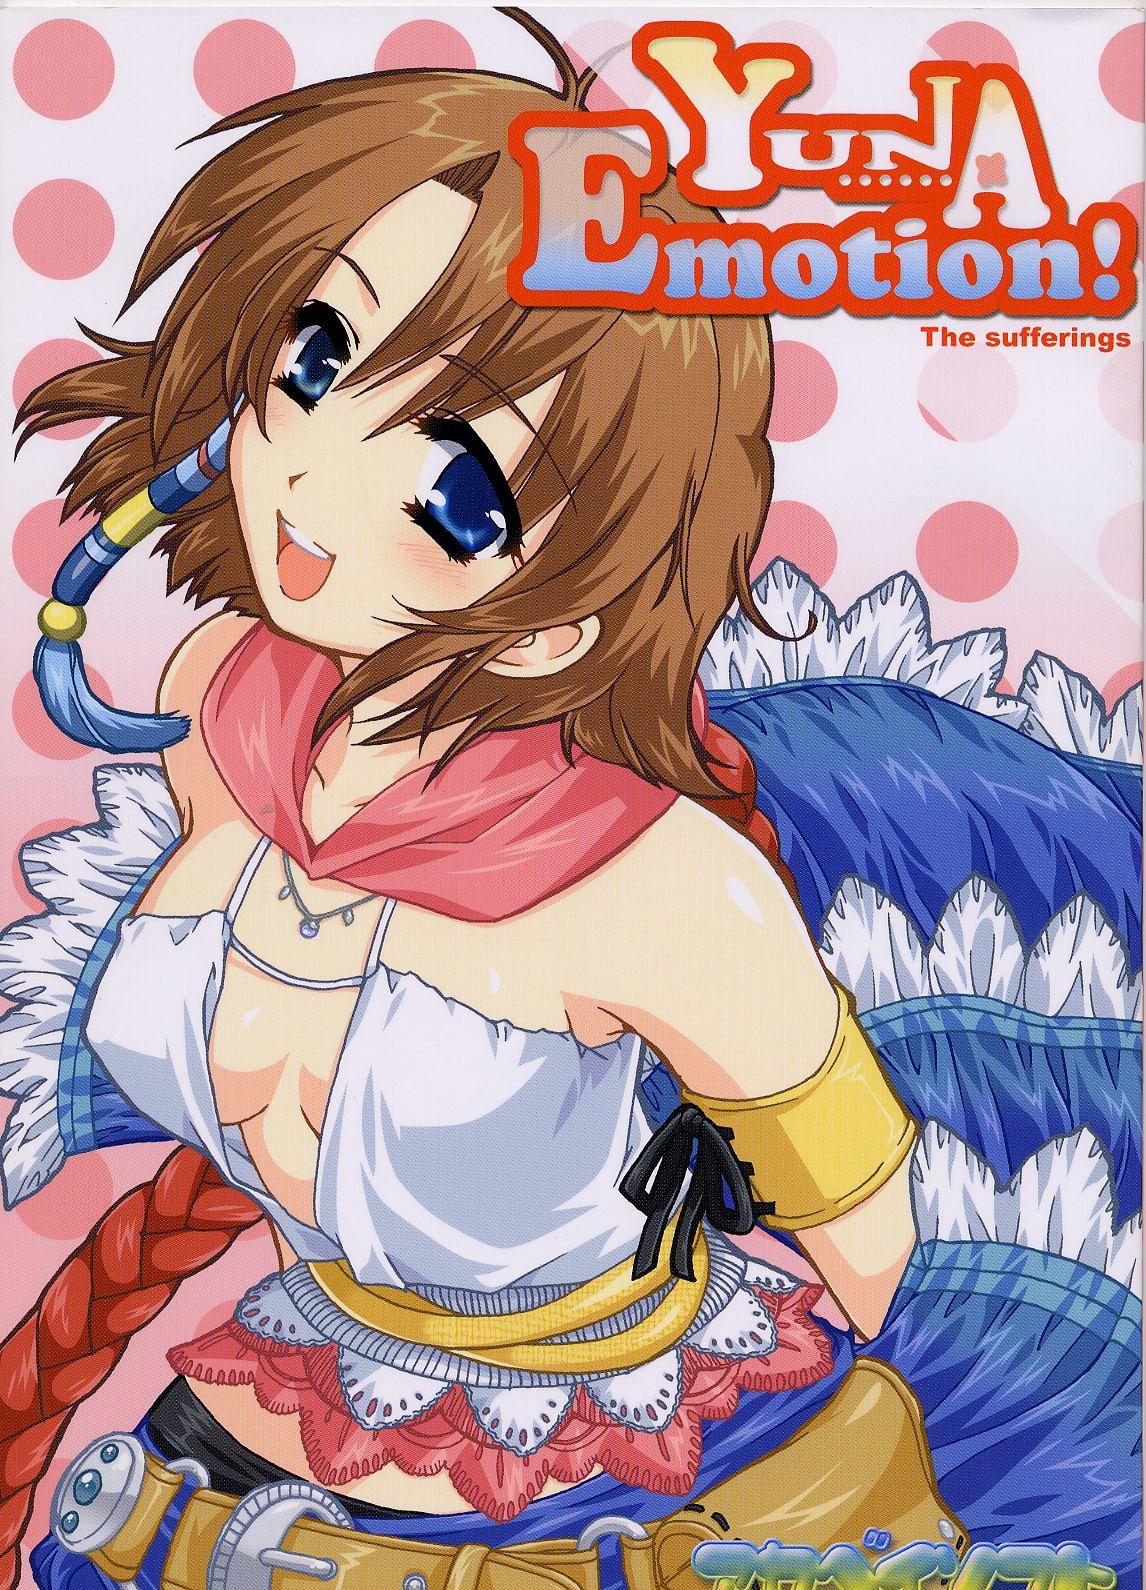 Yuna Emotion! 0